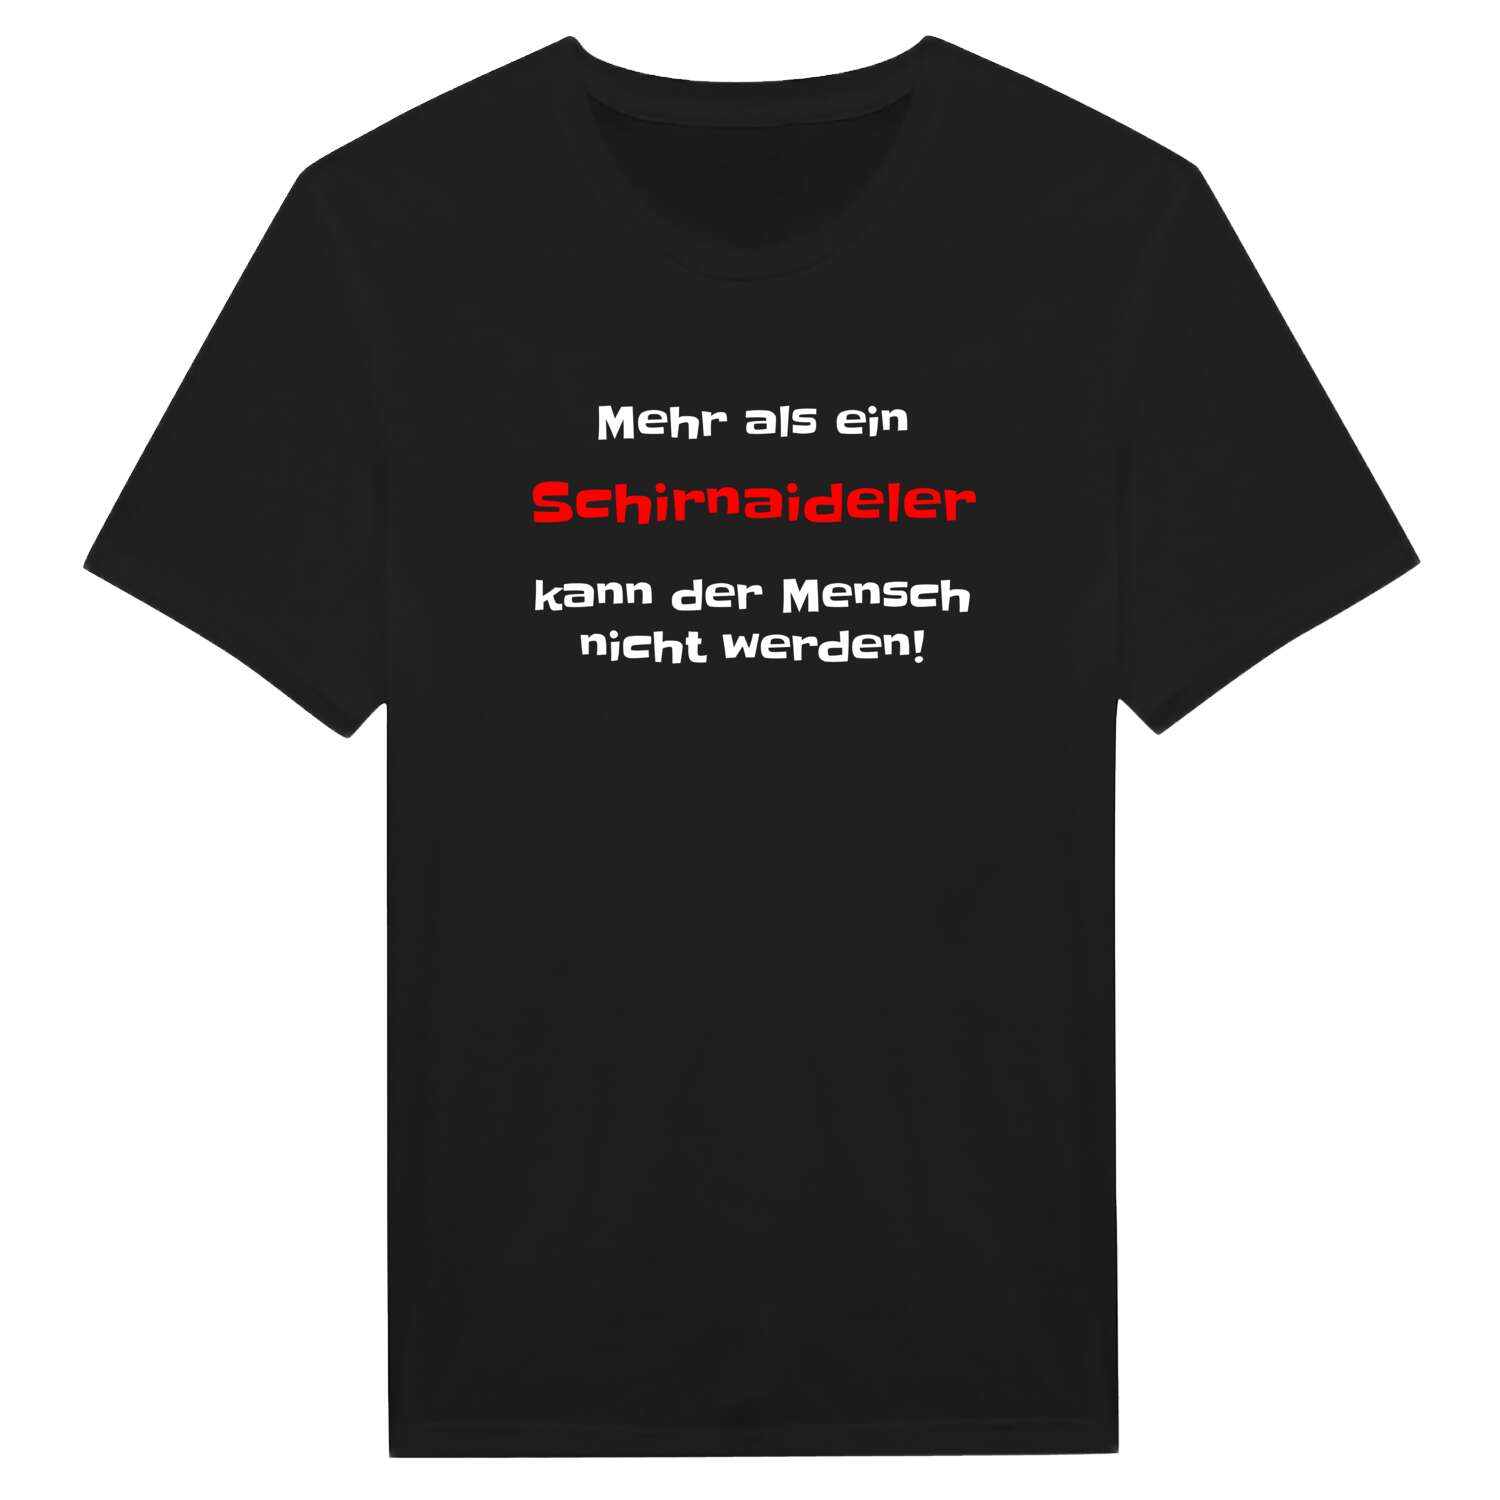 Schirnaidel T-Shirt »Mehr als ein«